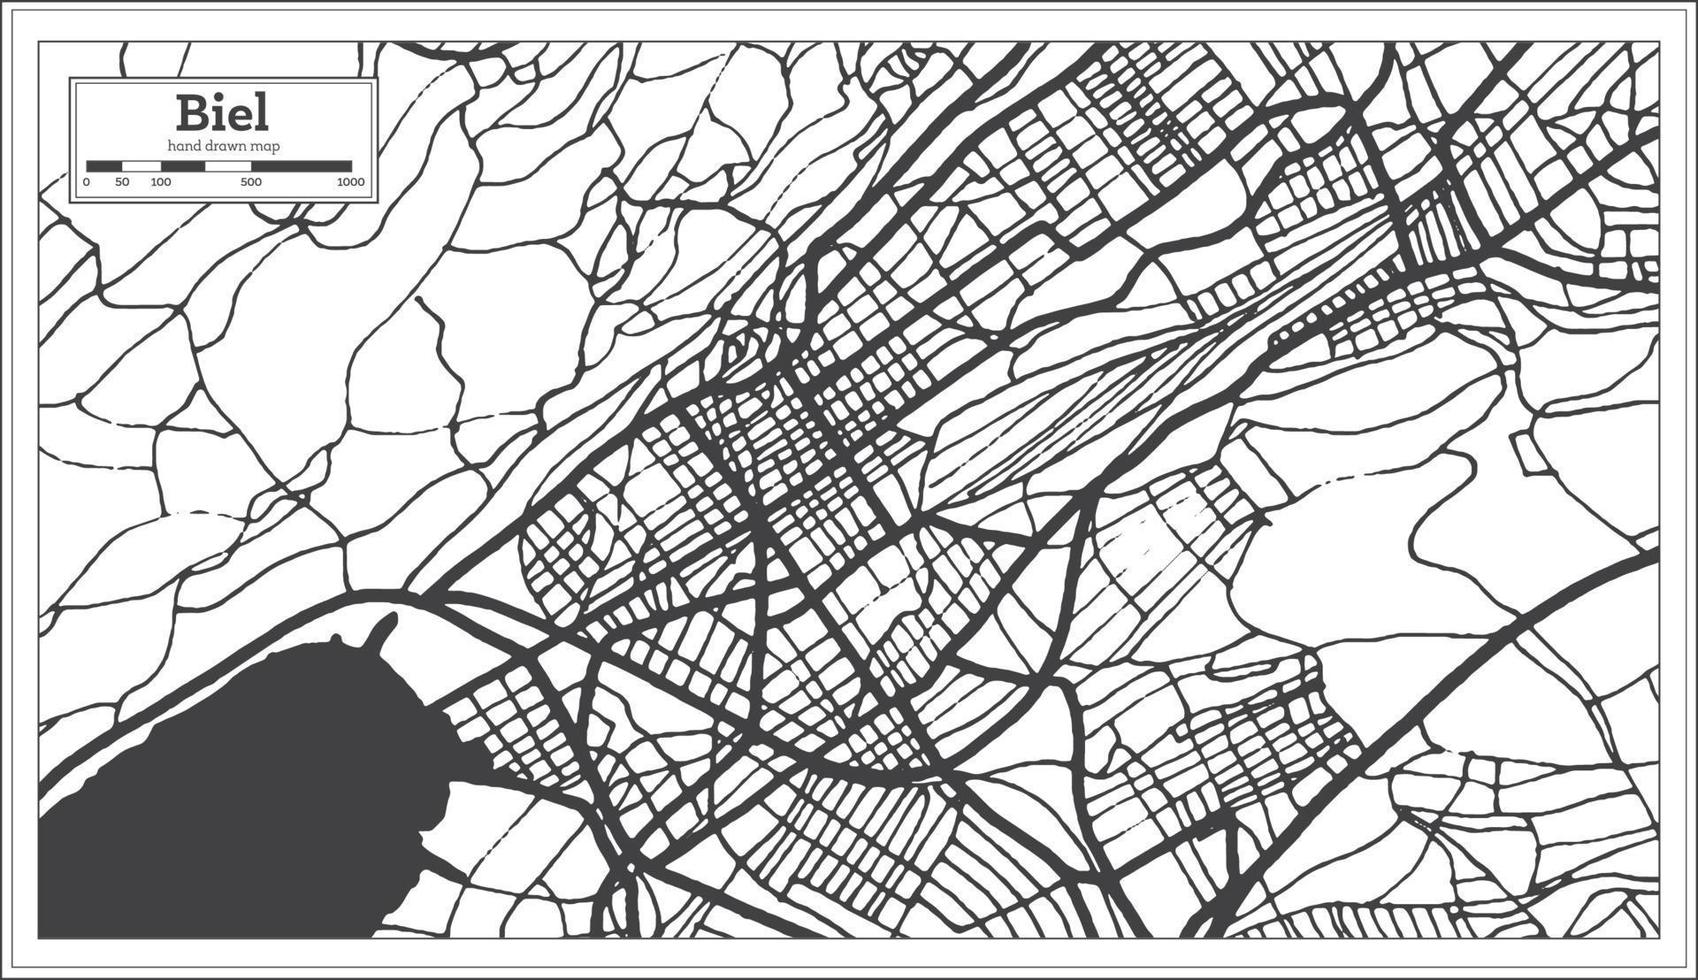 biel schweiz stad Karta i svart och vit Färg i retro stil. vektor